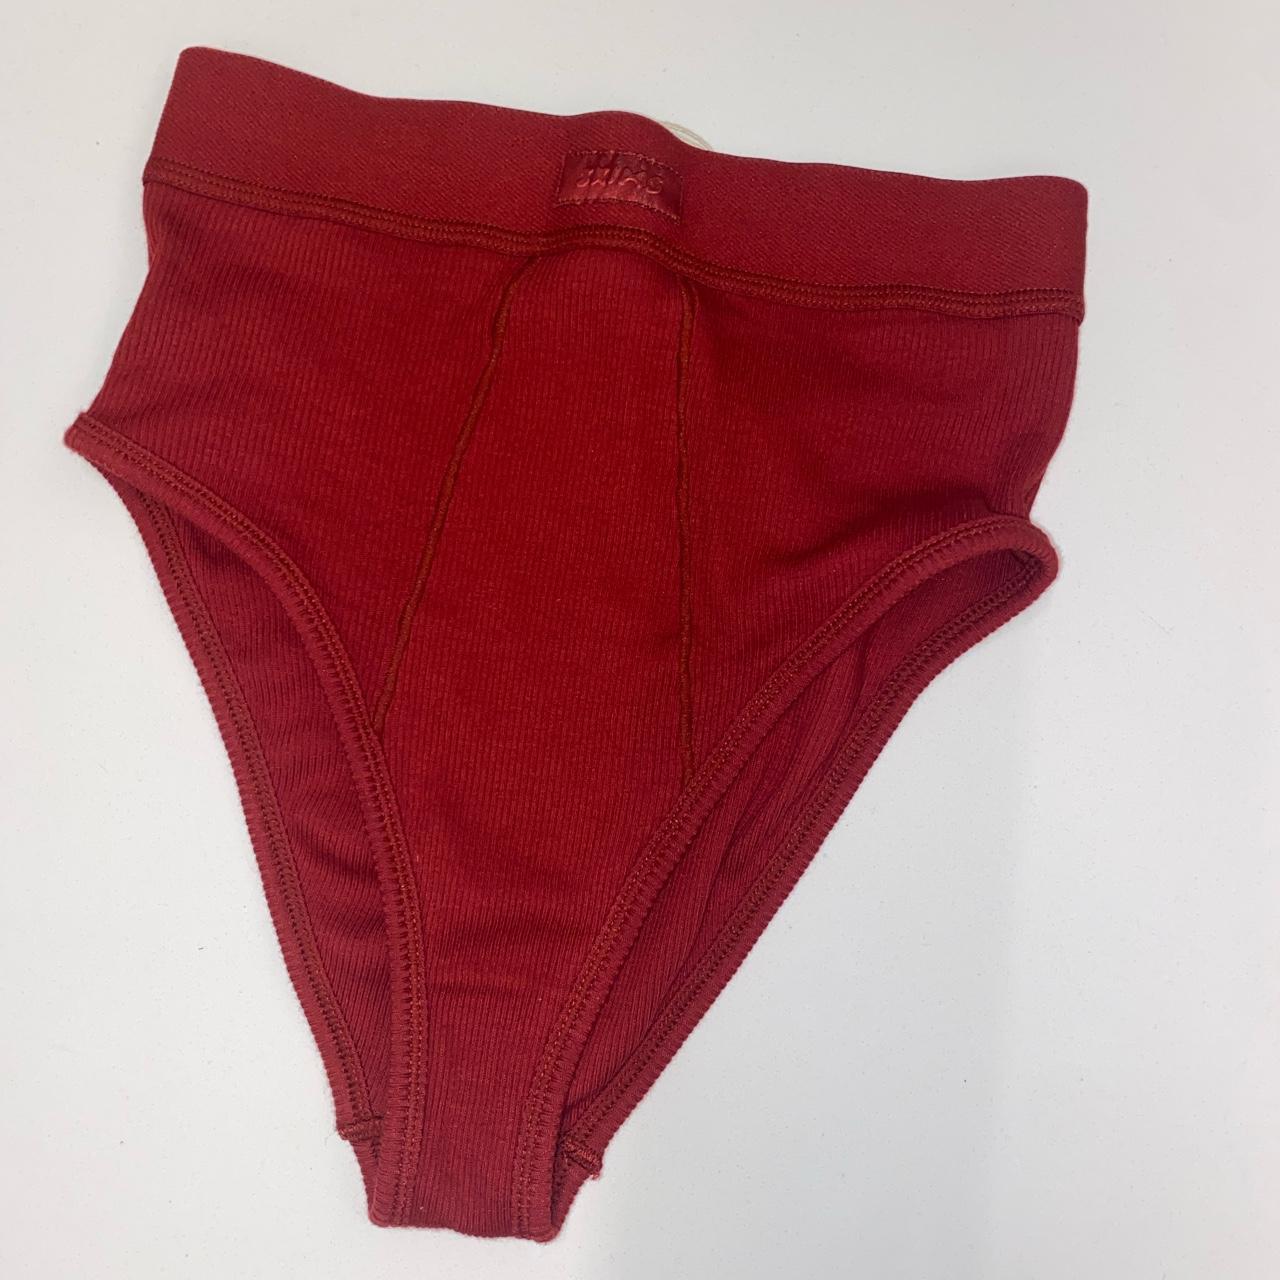 Skims underwear BRIEFS Red undies in color red - Depop